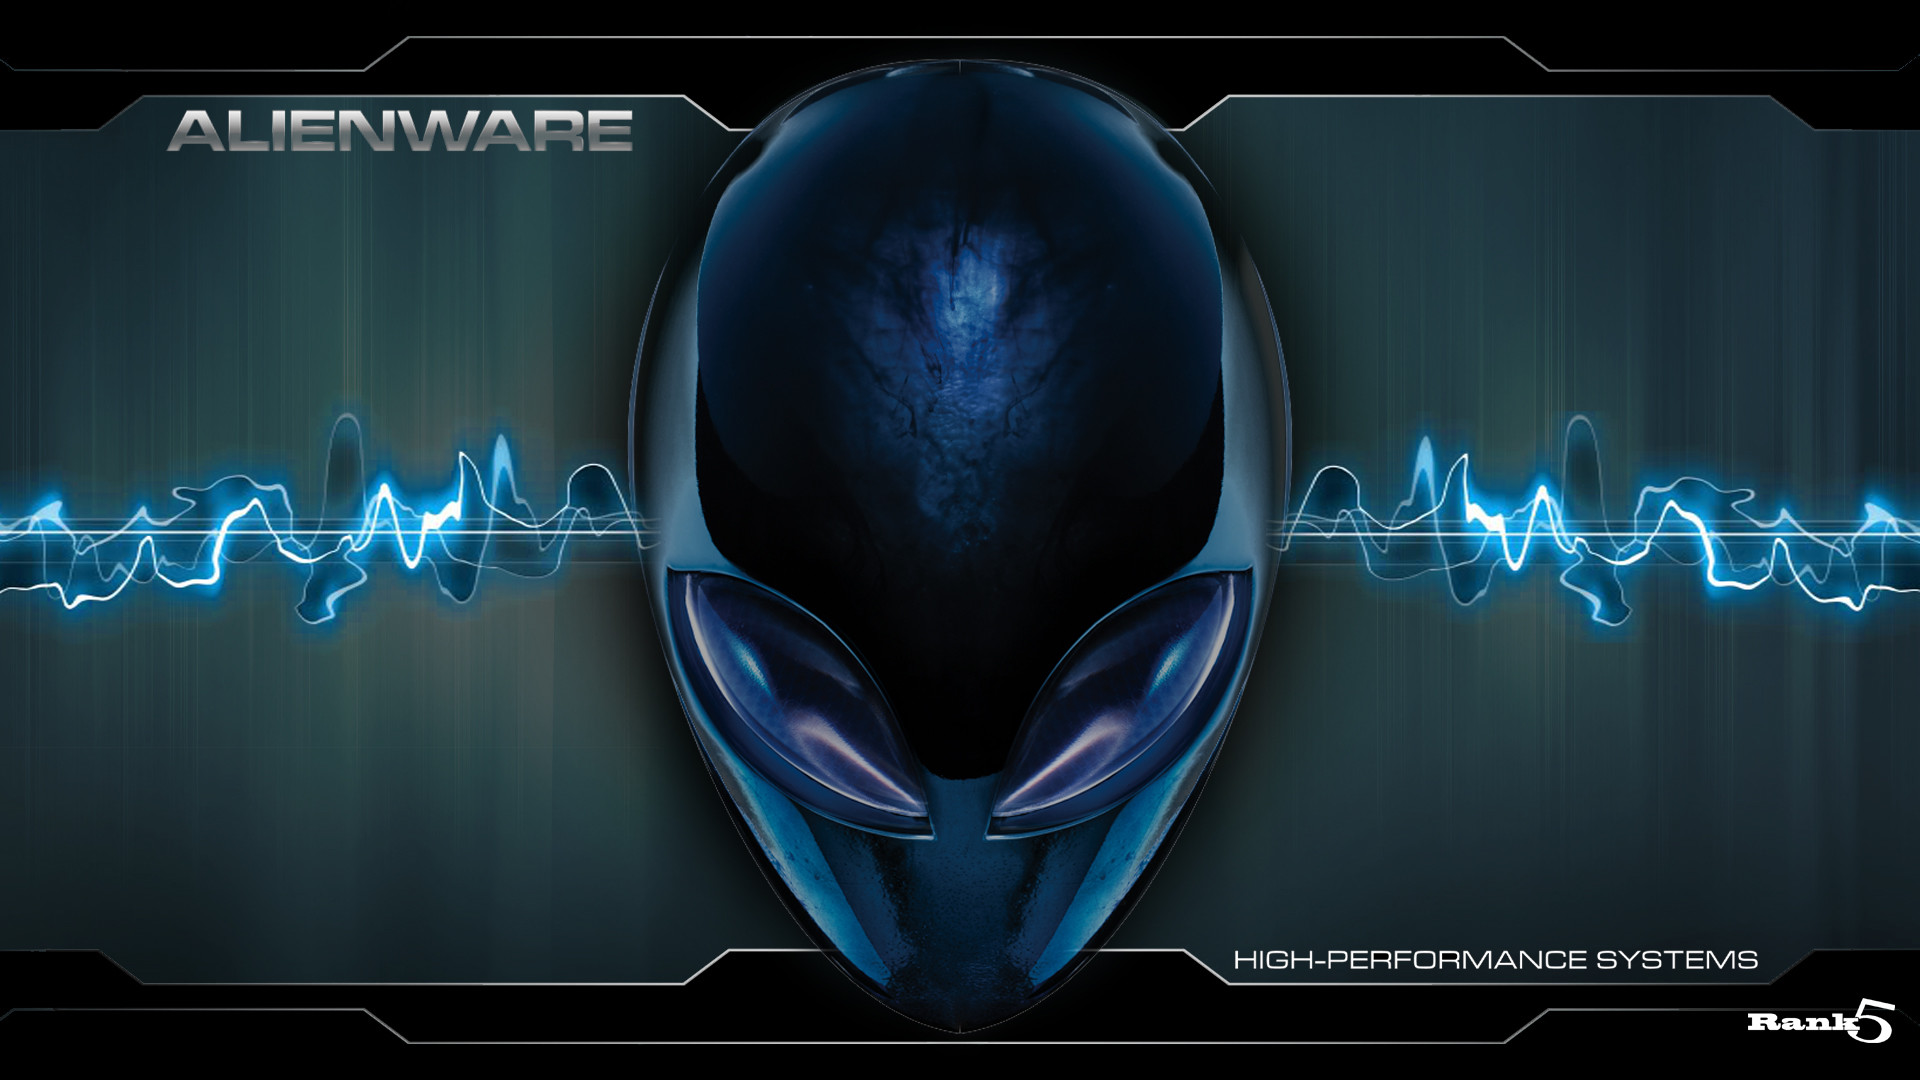 4k Alienware Wallpaper 72 Images